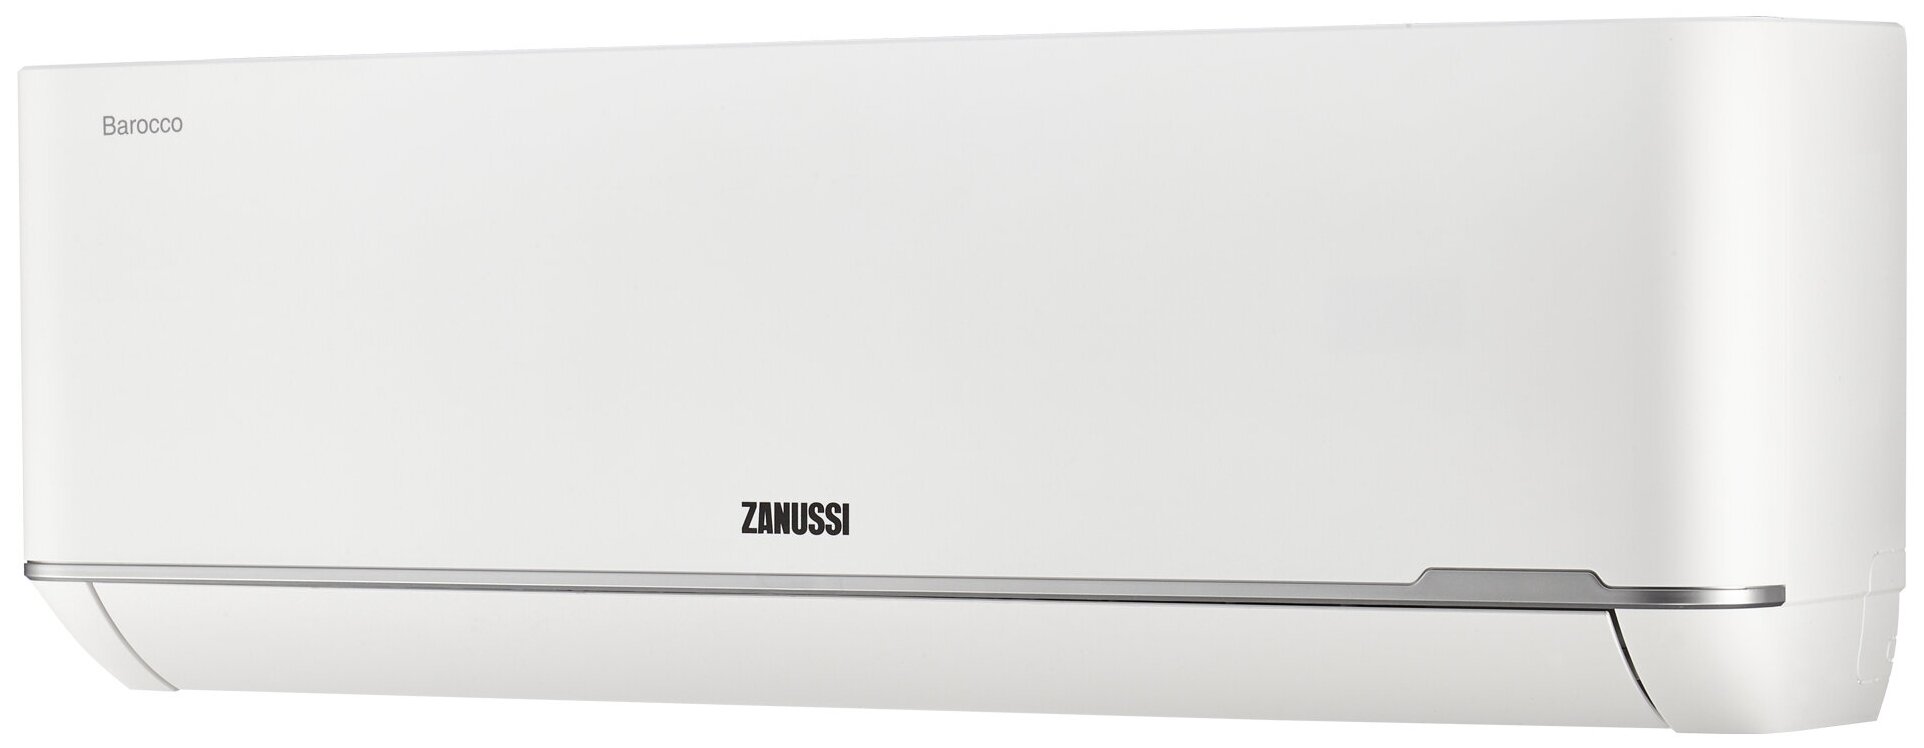 Сплит-система Zanussi ZACS-09 HB/N1 комплект